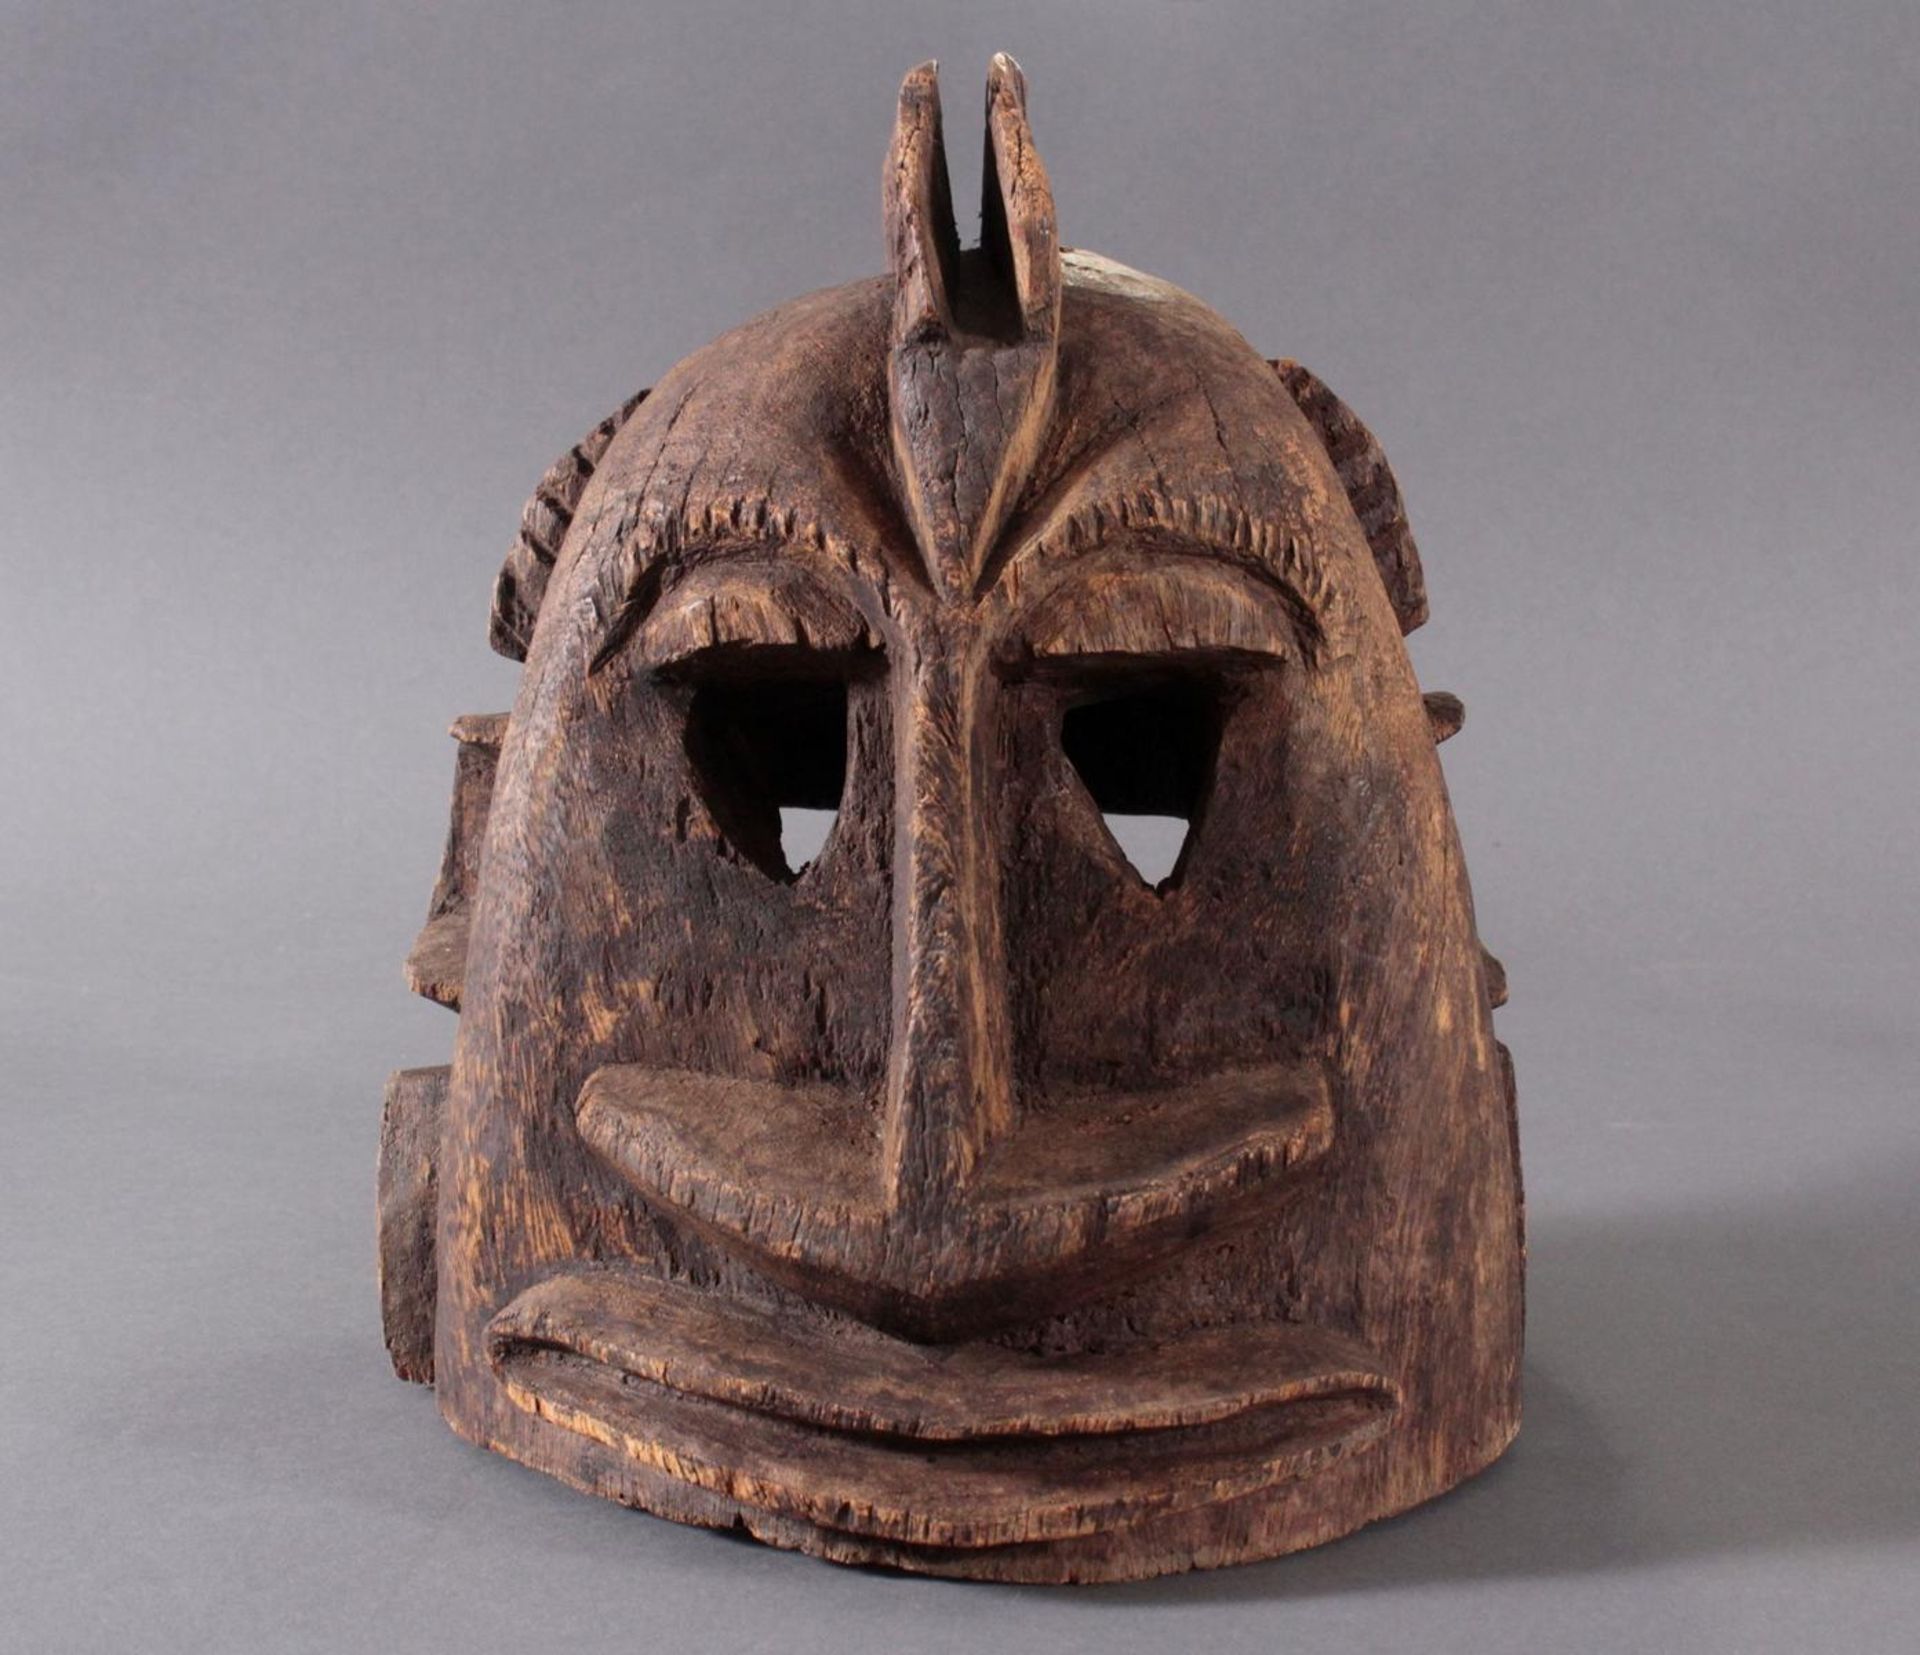 Antike Helmmaske der Dogon, Mali, 2. Hälfte 20. Jh.Aus Vollholz geschnitzt, ca. 29 x 25 x 24 cm, 2,5